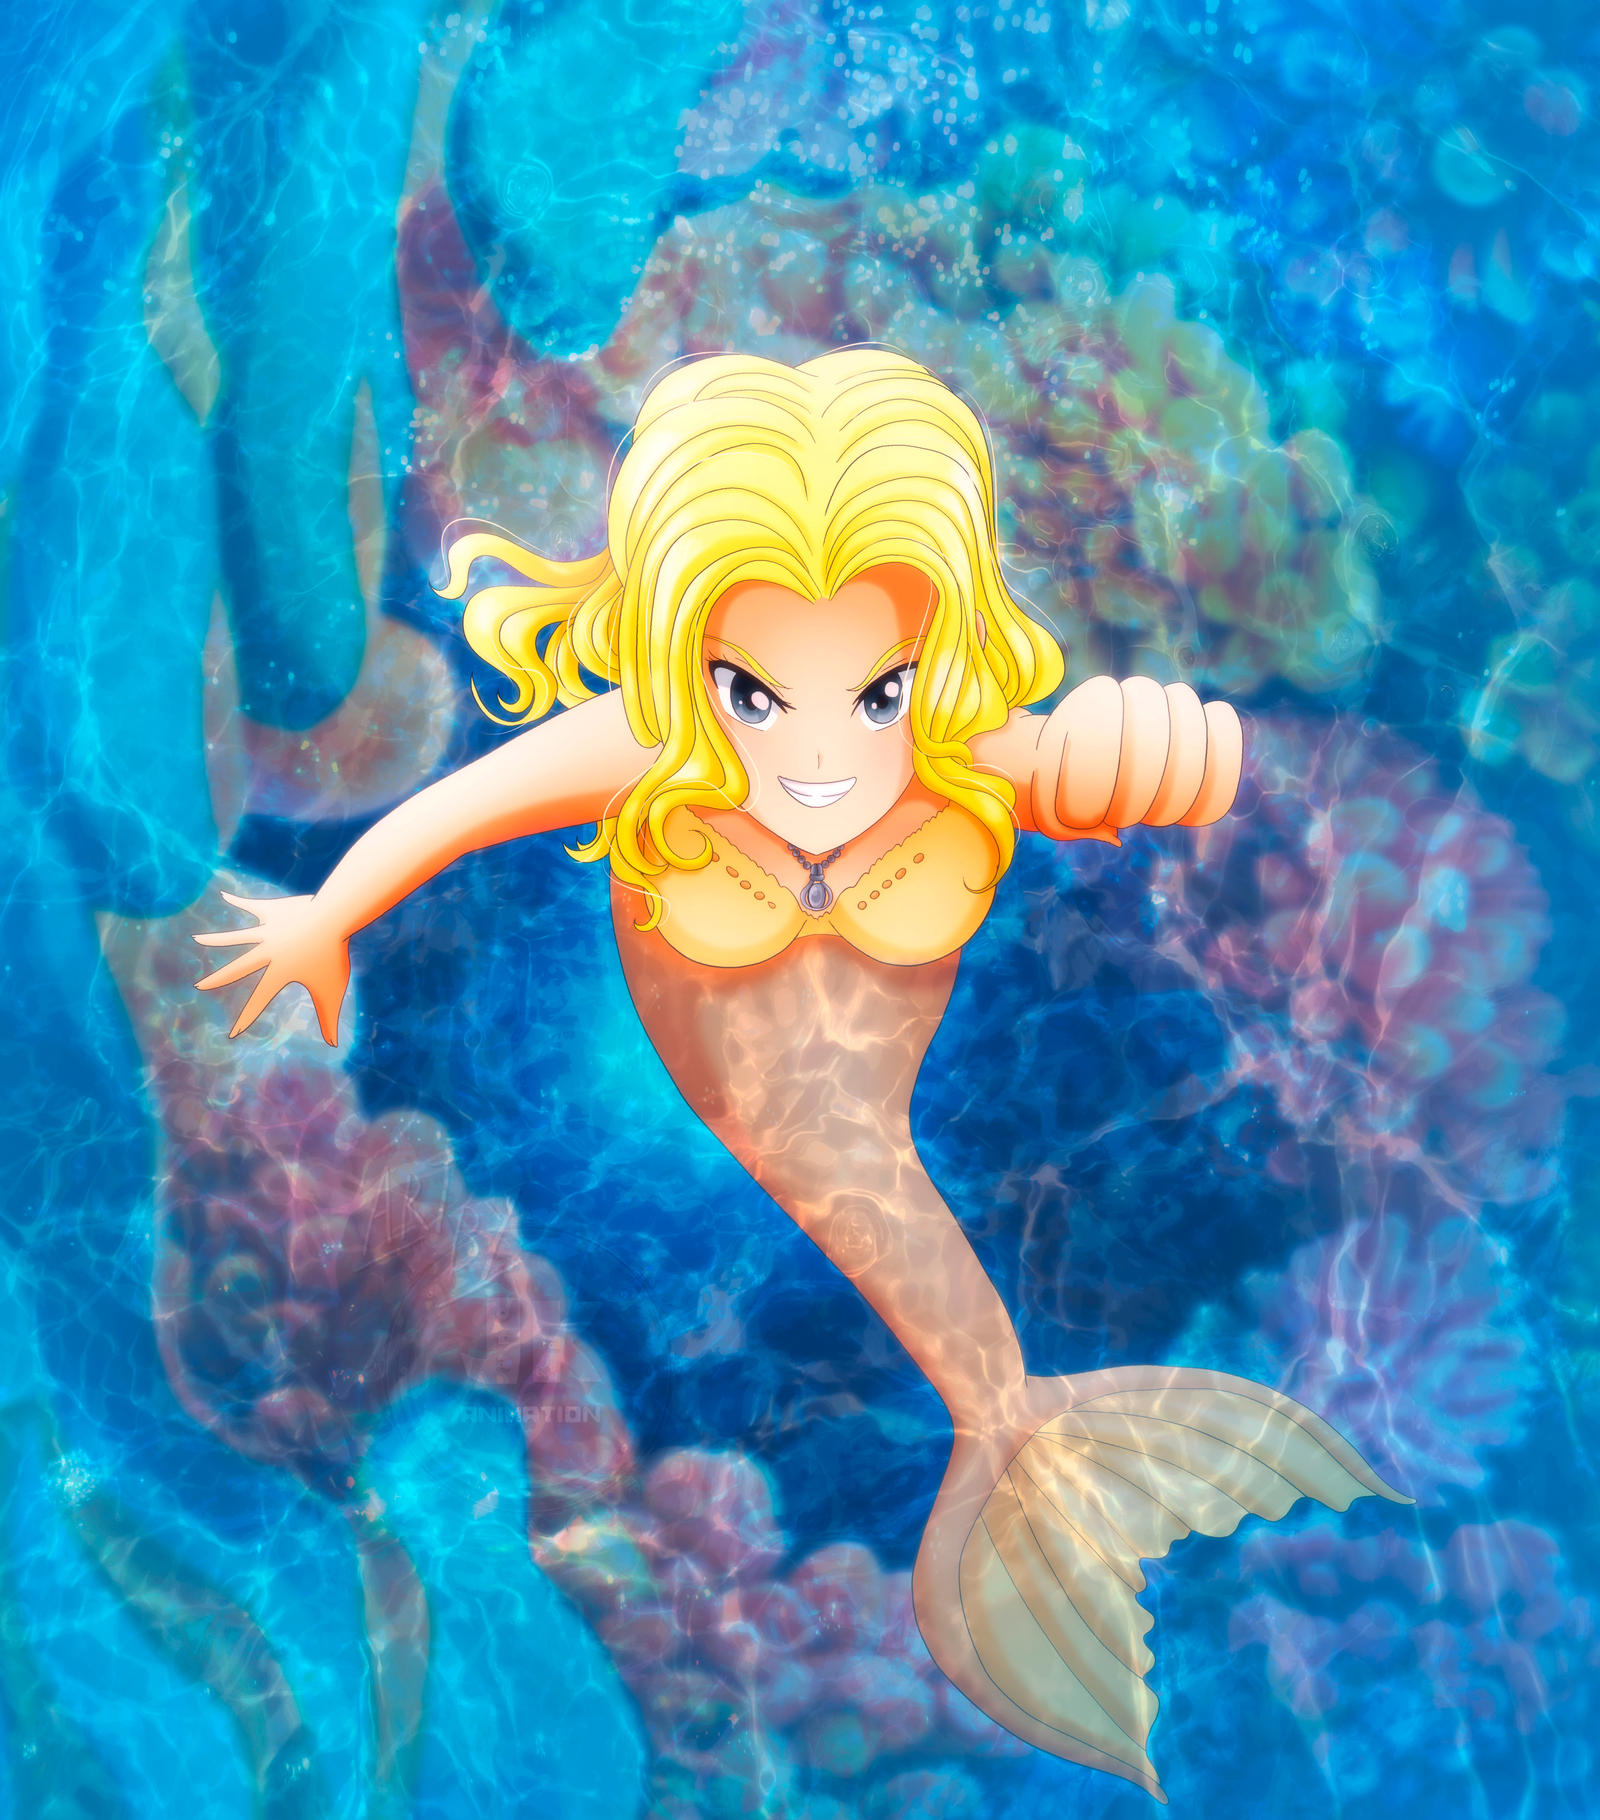 Cynthia Mermaid: Mako Mermaids Q&A